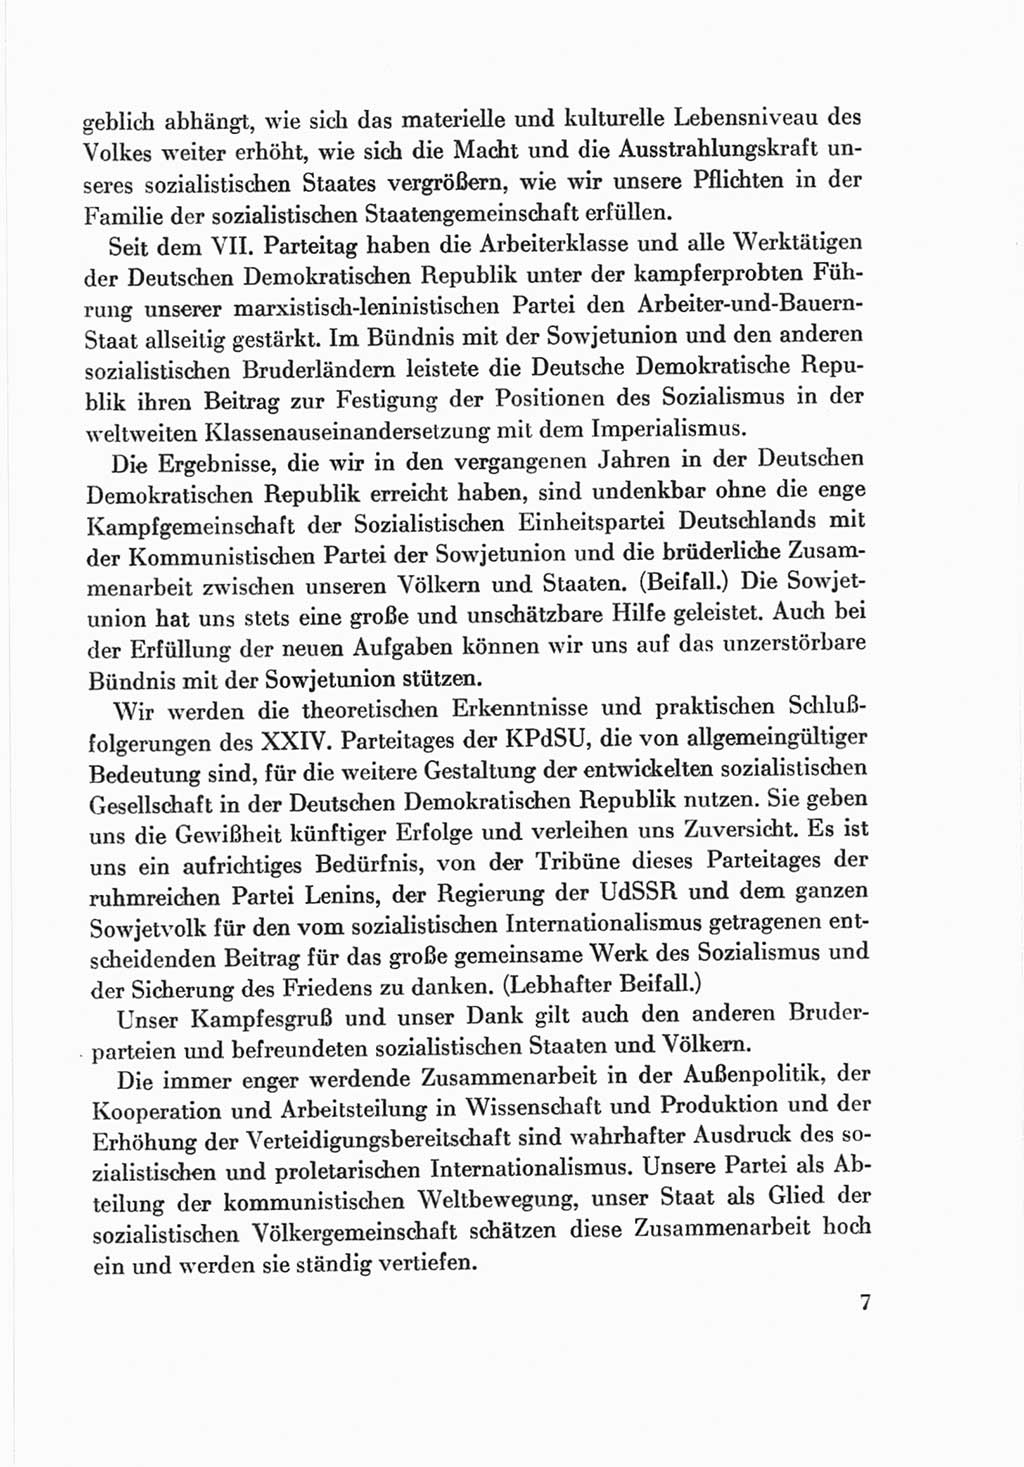 Protokoll der Verhandlungen des Ⅷ. Parteitages der Sozialistischen Einheitspartei Deutschlands (SED) [Deutsche Demokratische Republik (DDR)] 1971, Band 2, Seite 7 (Prot. Verh. Ⅷ. PT SED DDR 1971, Bd. 2, S. 7)